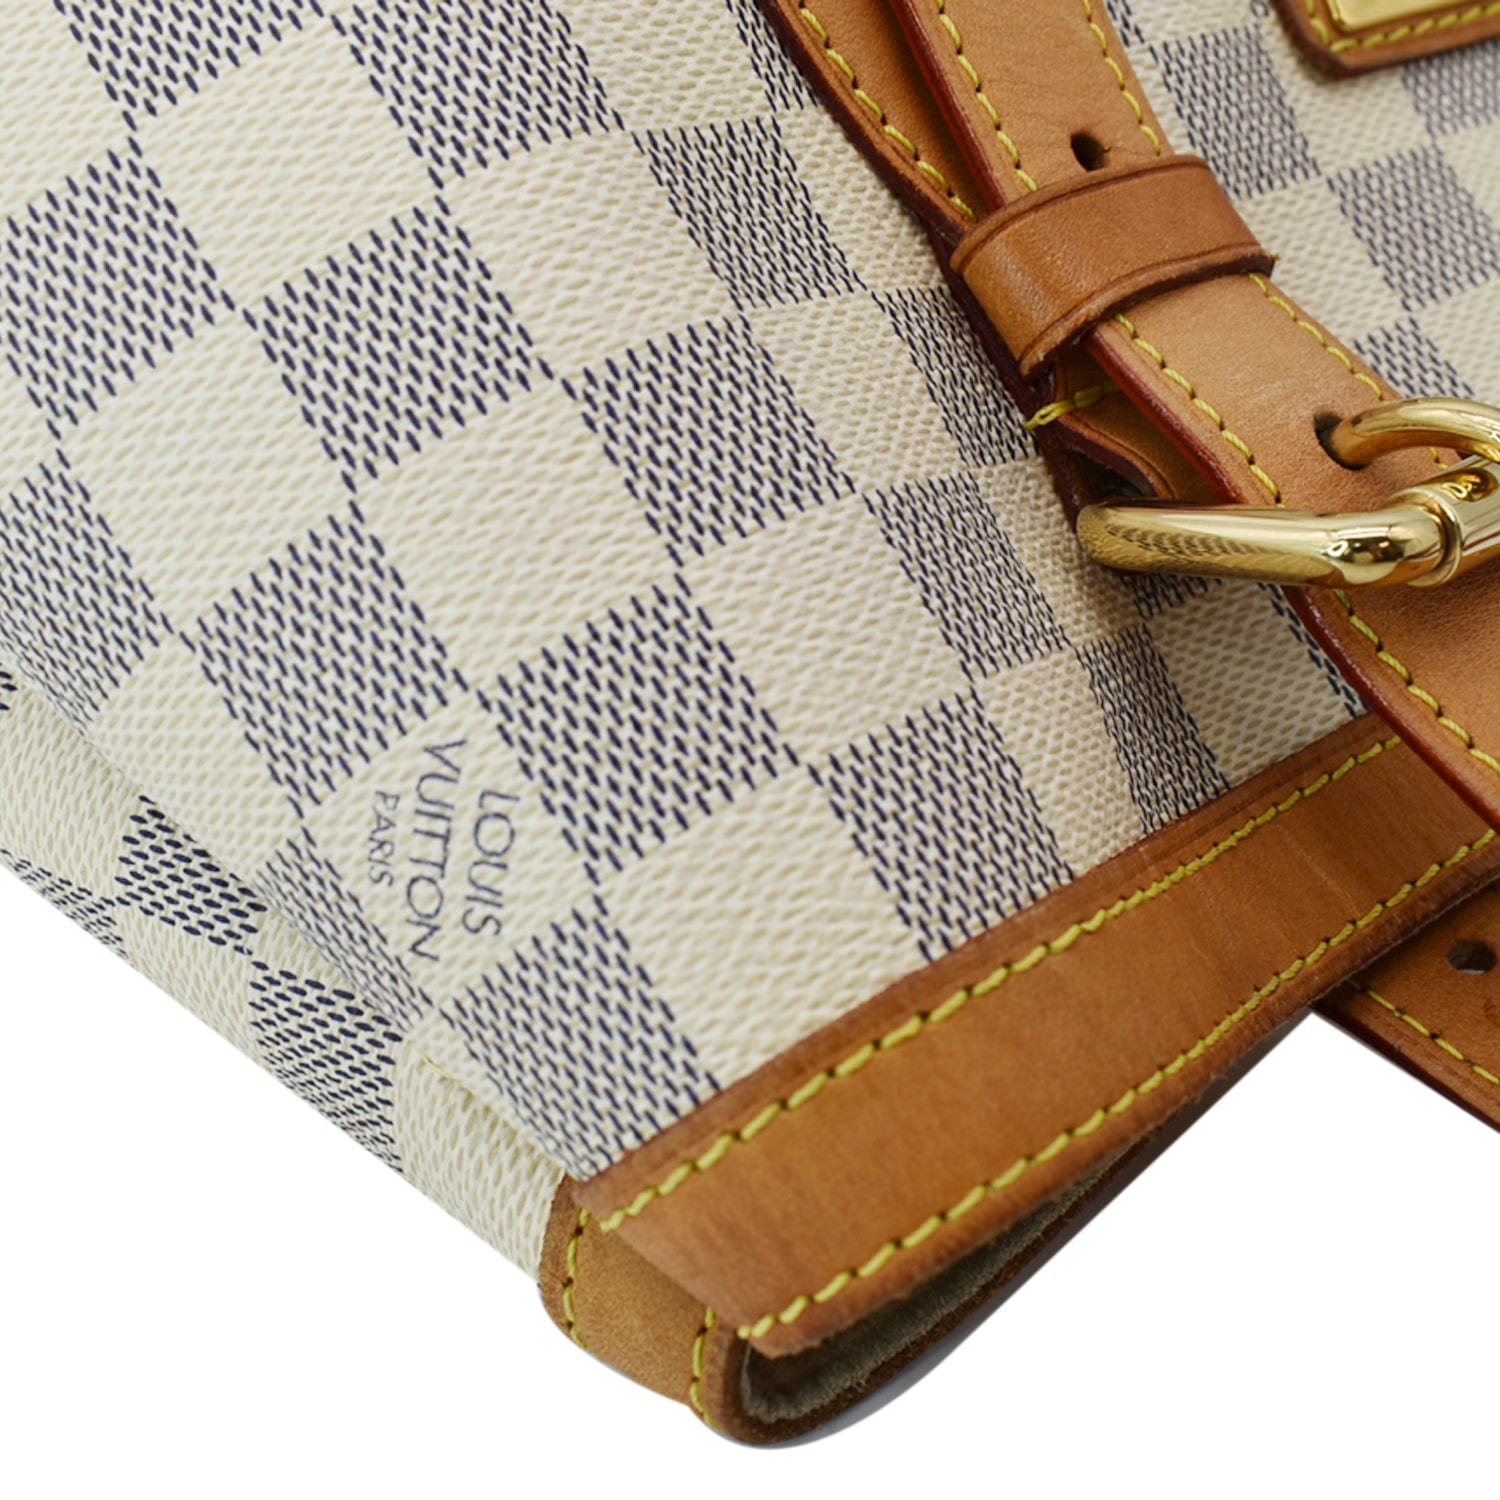 Louis Vuitton, Bags, Louis Vuitton Hampstead Damier Azur Mm Adjustable  Strap Tote White Check